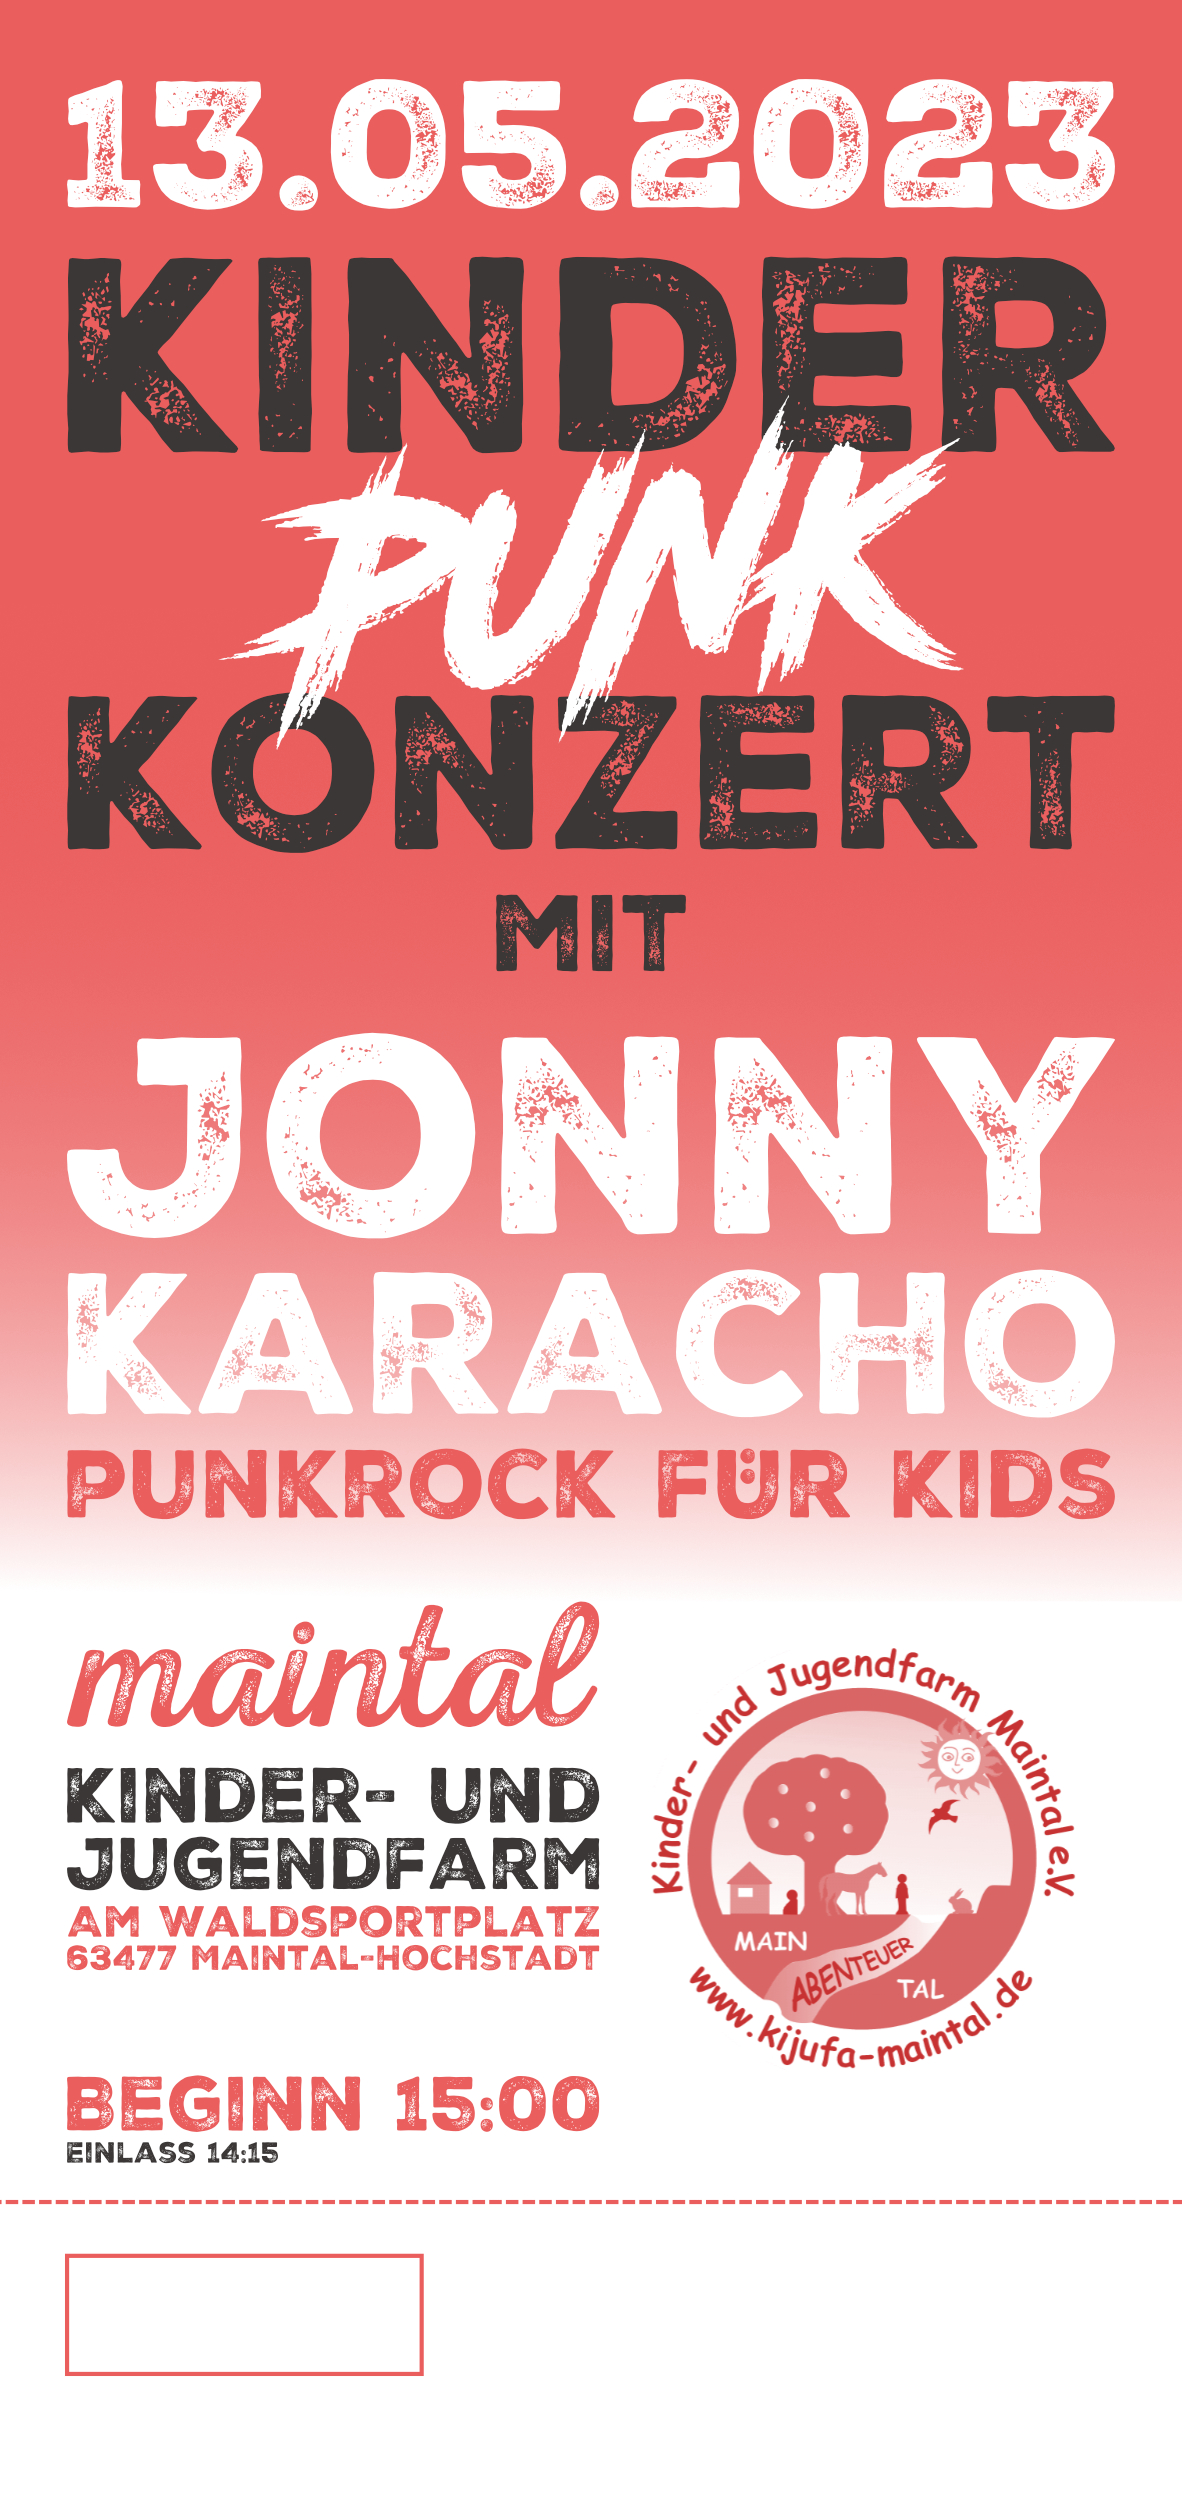 +++Ticket: 13.05.2023 Jonny Karacho live in Maintal+++